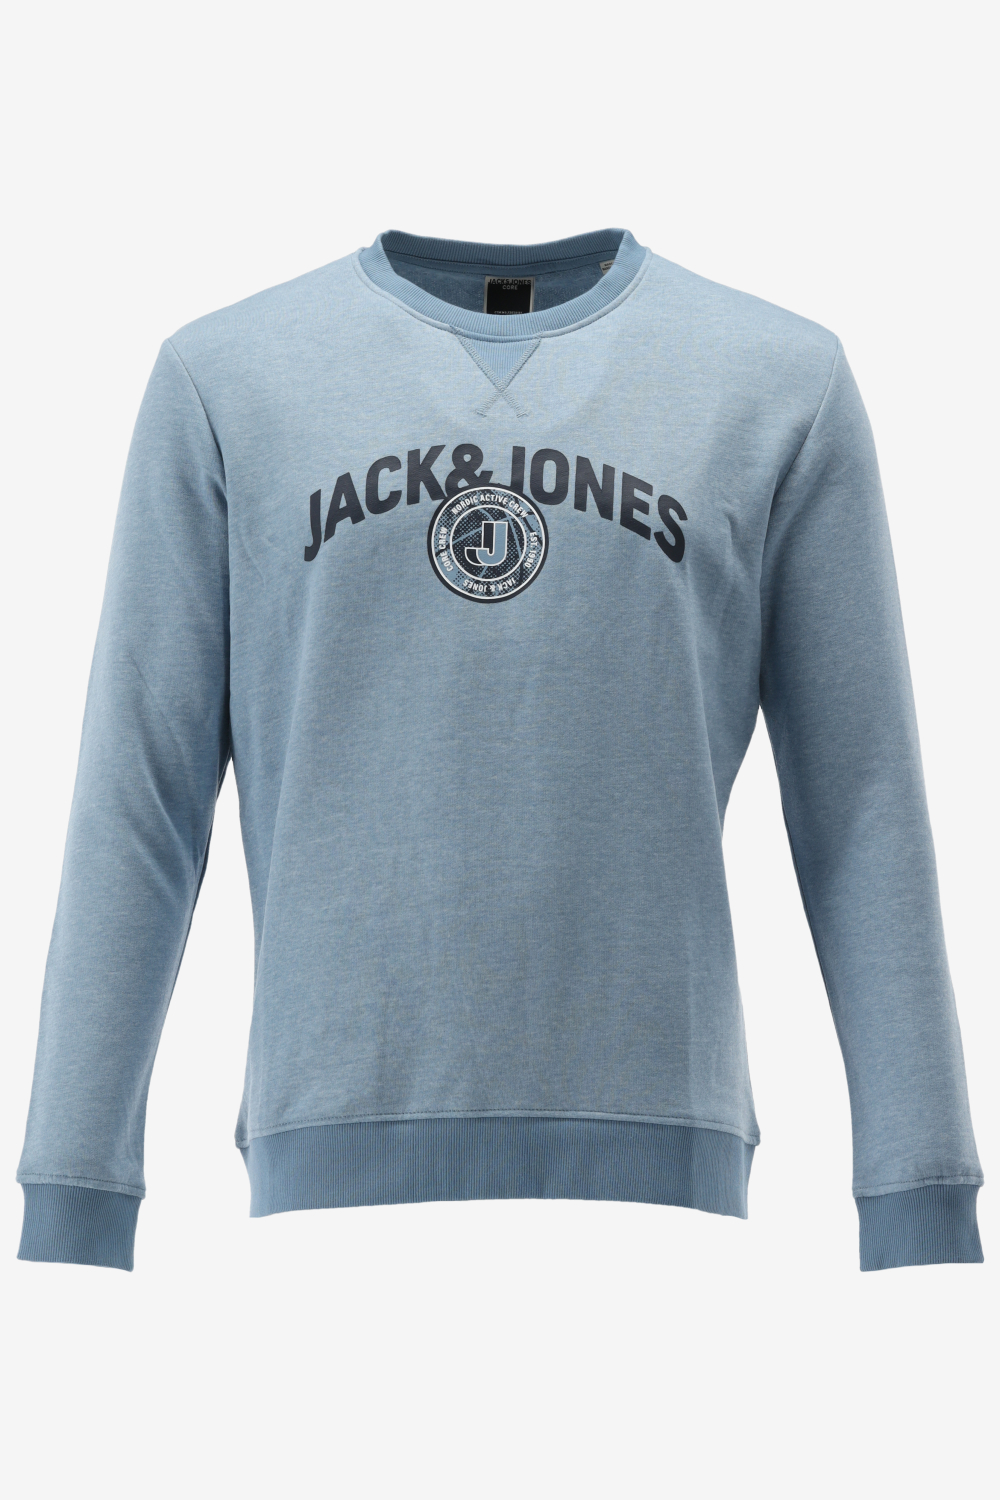 Jack&Jones Sweater OUNCE